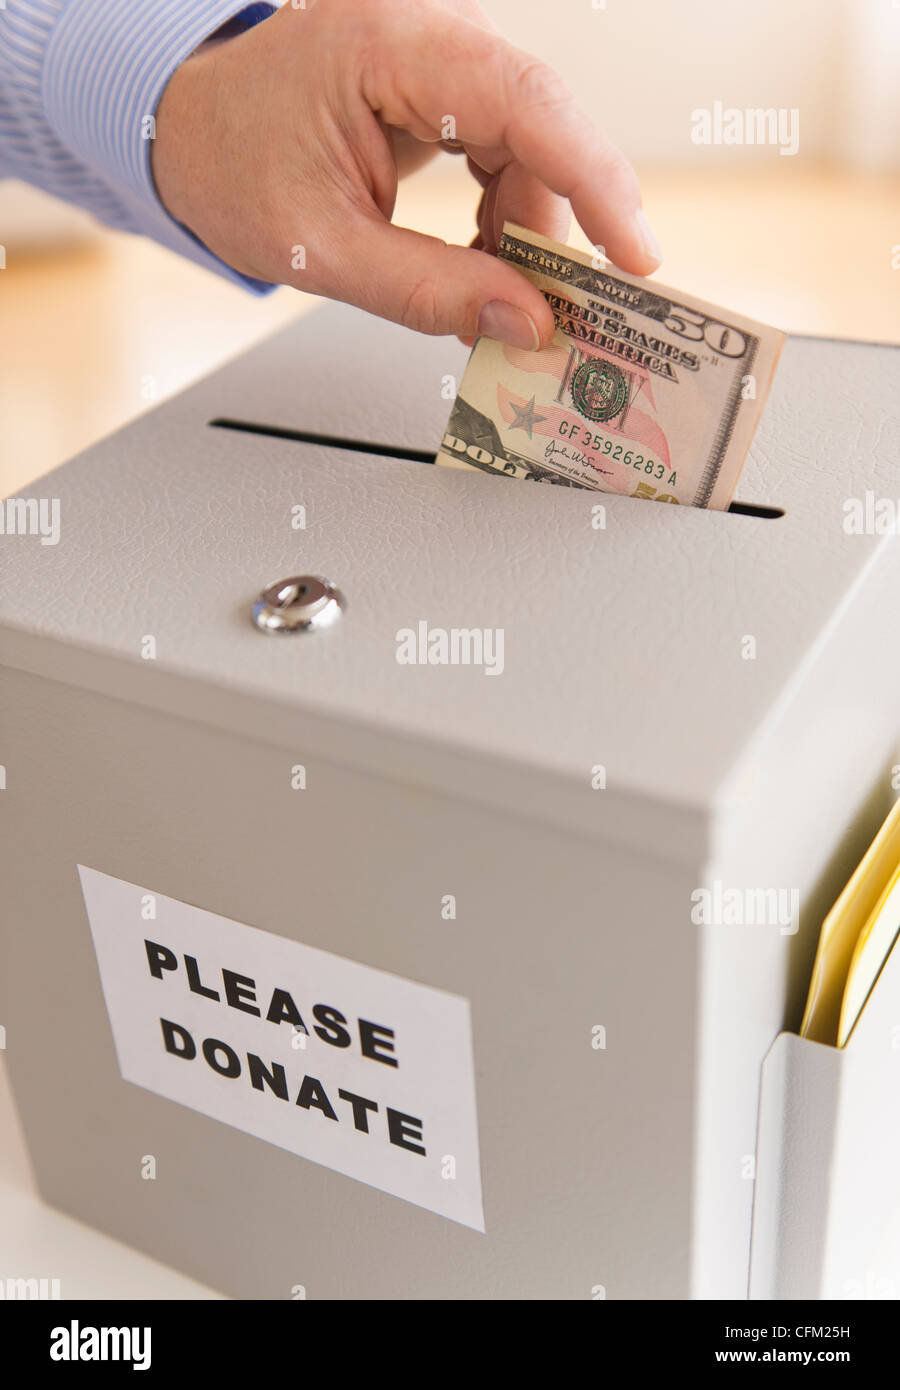 Jersey City, New Jersey, la main de l'homme mettre des dollars dans boîte de donation Banque D'Images